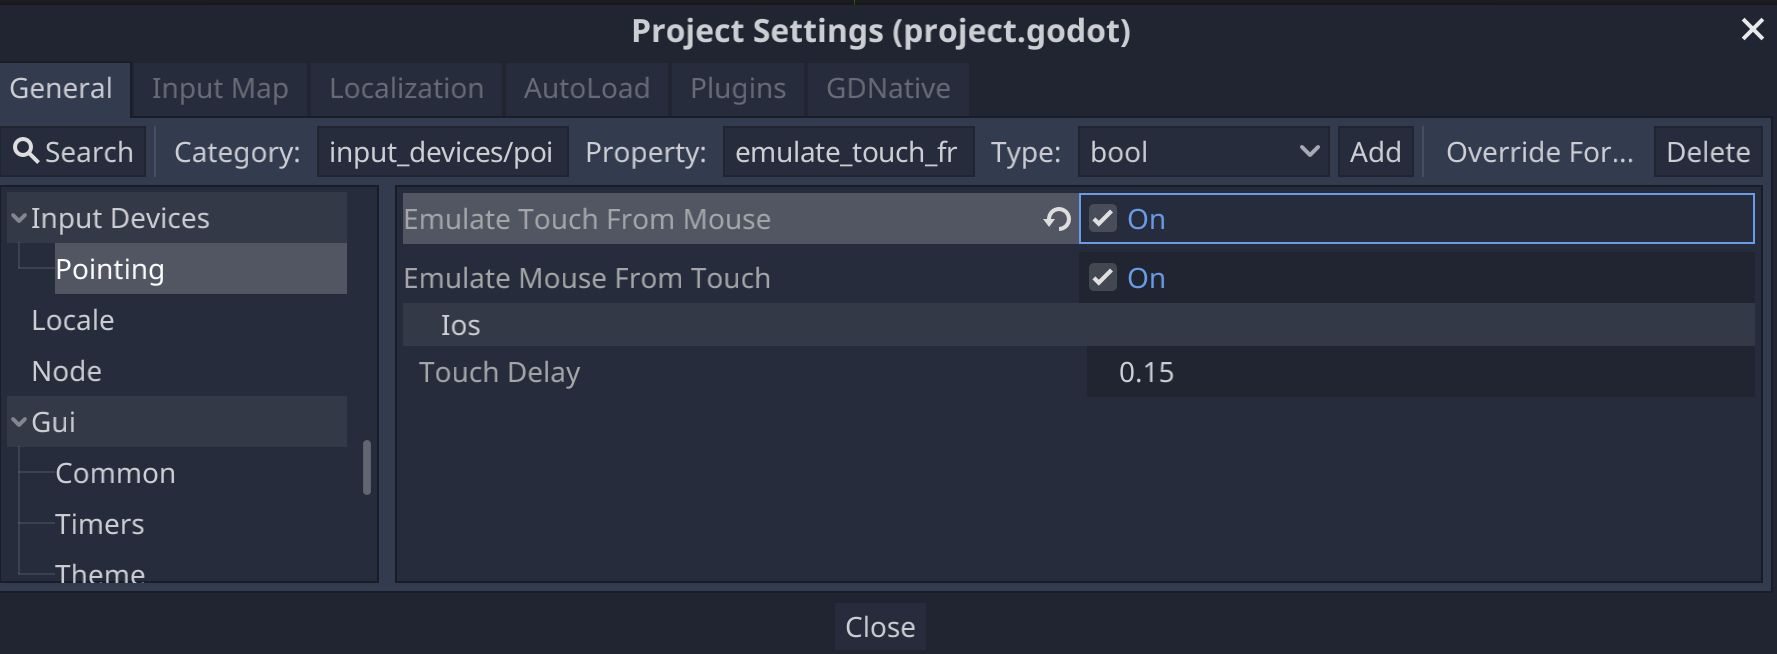 Configuración de dispositivos de entrada en el proyecto de Godot